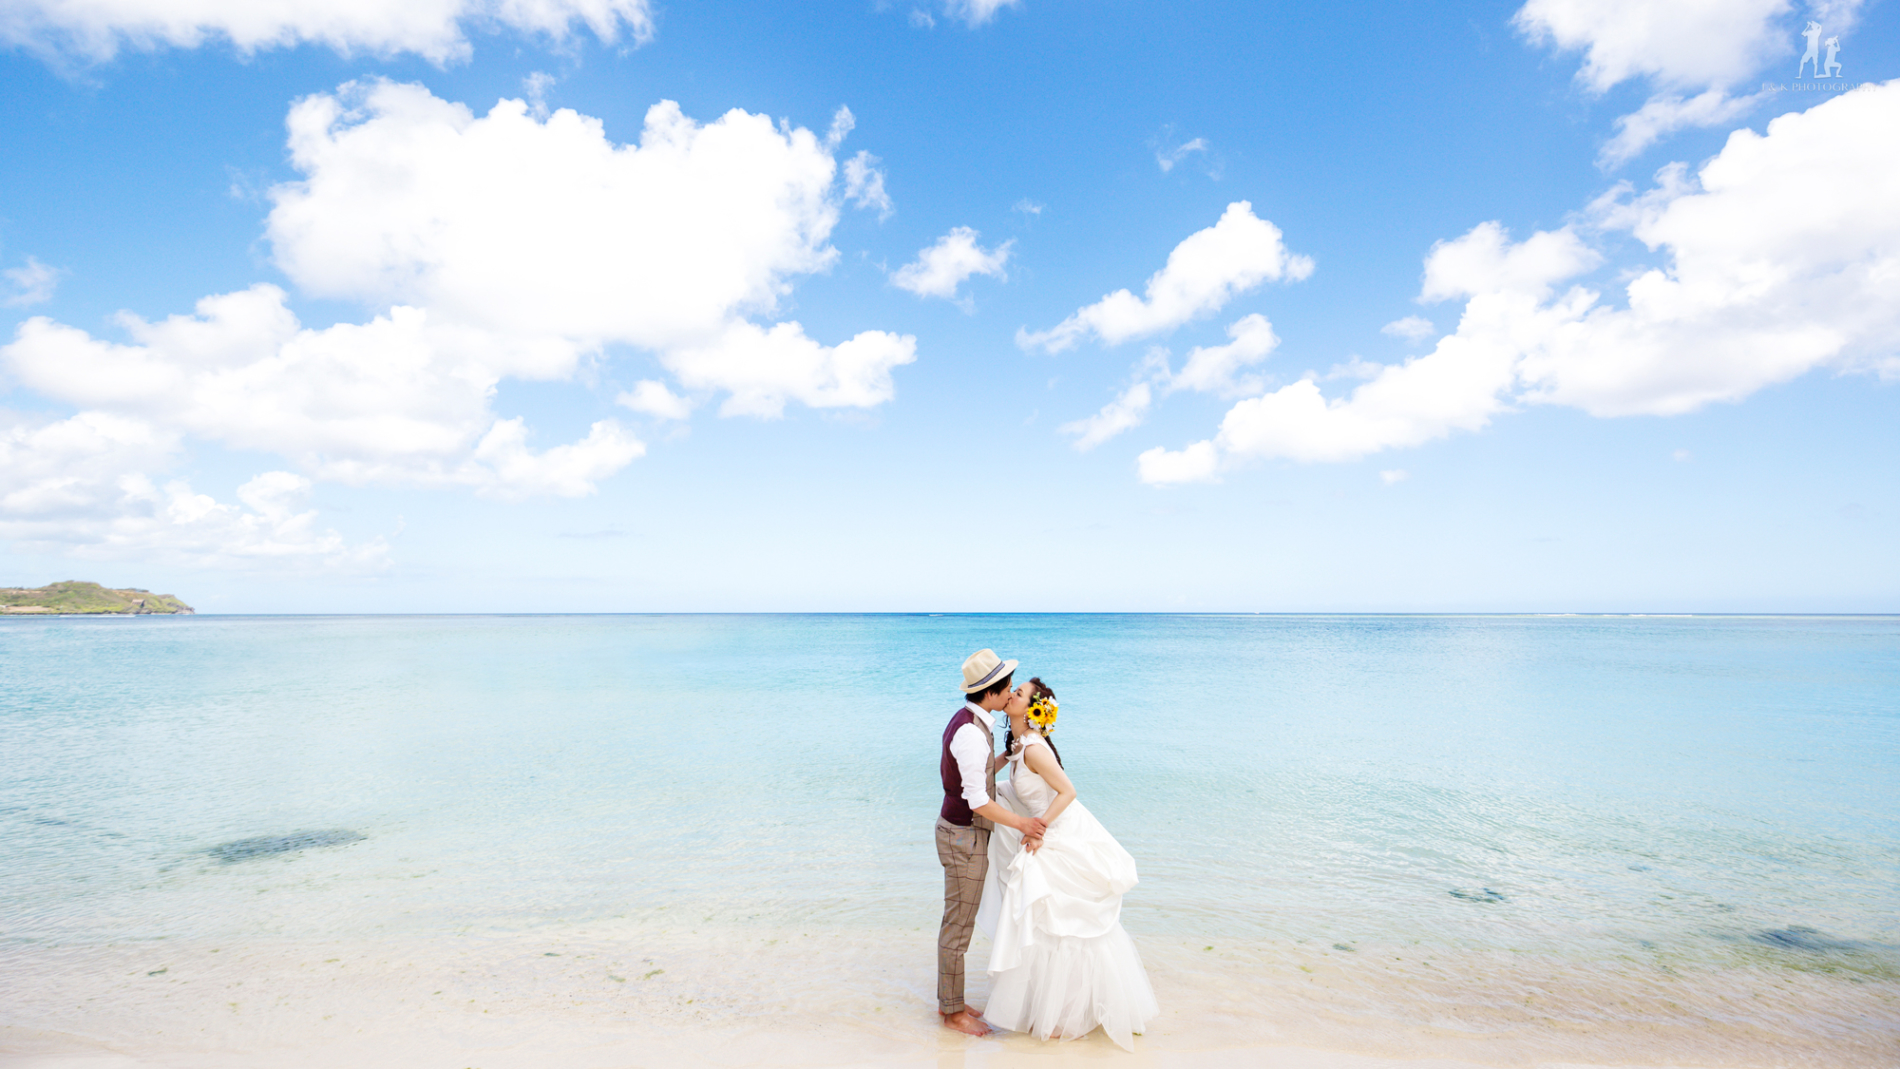 グアムで前撮り- J&K PHOTOGRAPHY -Wedding photographer James and Kina, Guam and Japanグアムで写真撮影　前撮りならジェイムス＆キナ